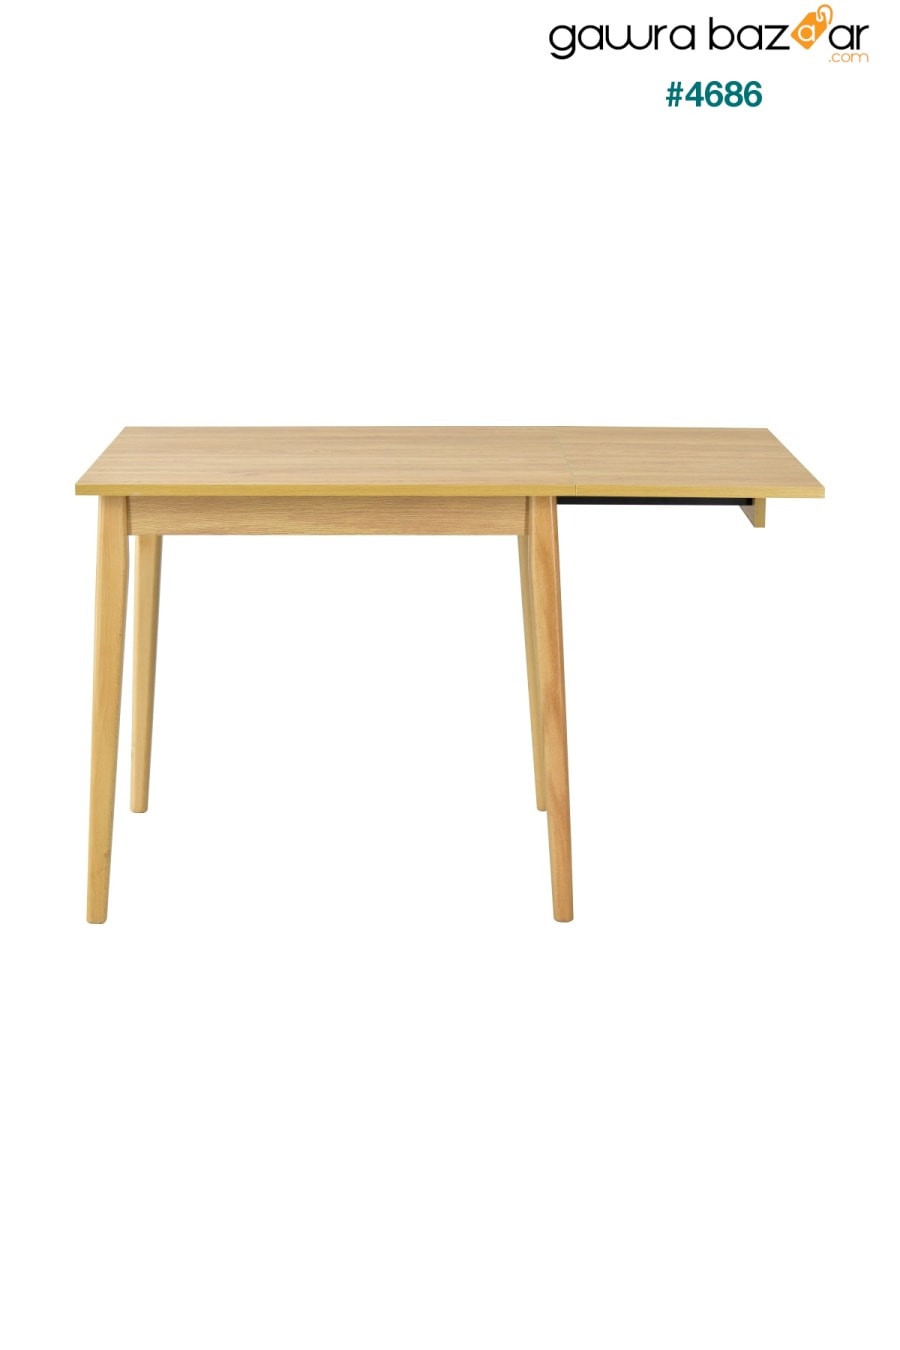 طاولة مطبخ خشبية قابلة للطي من افانوس - 70x80 سم VİLİNZE 3